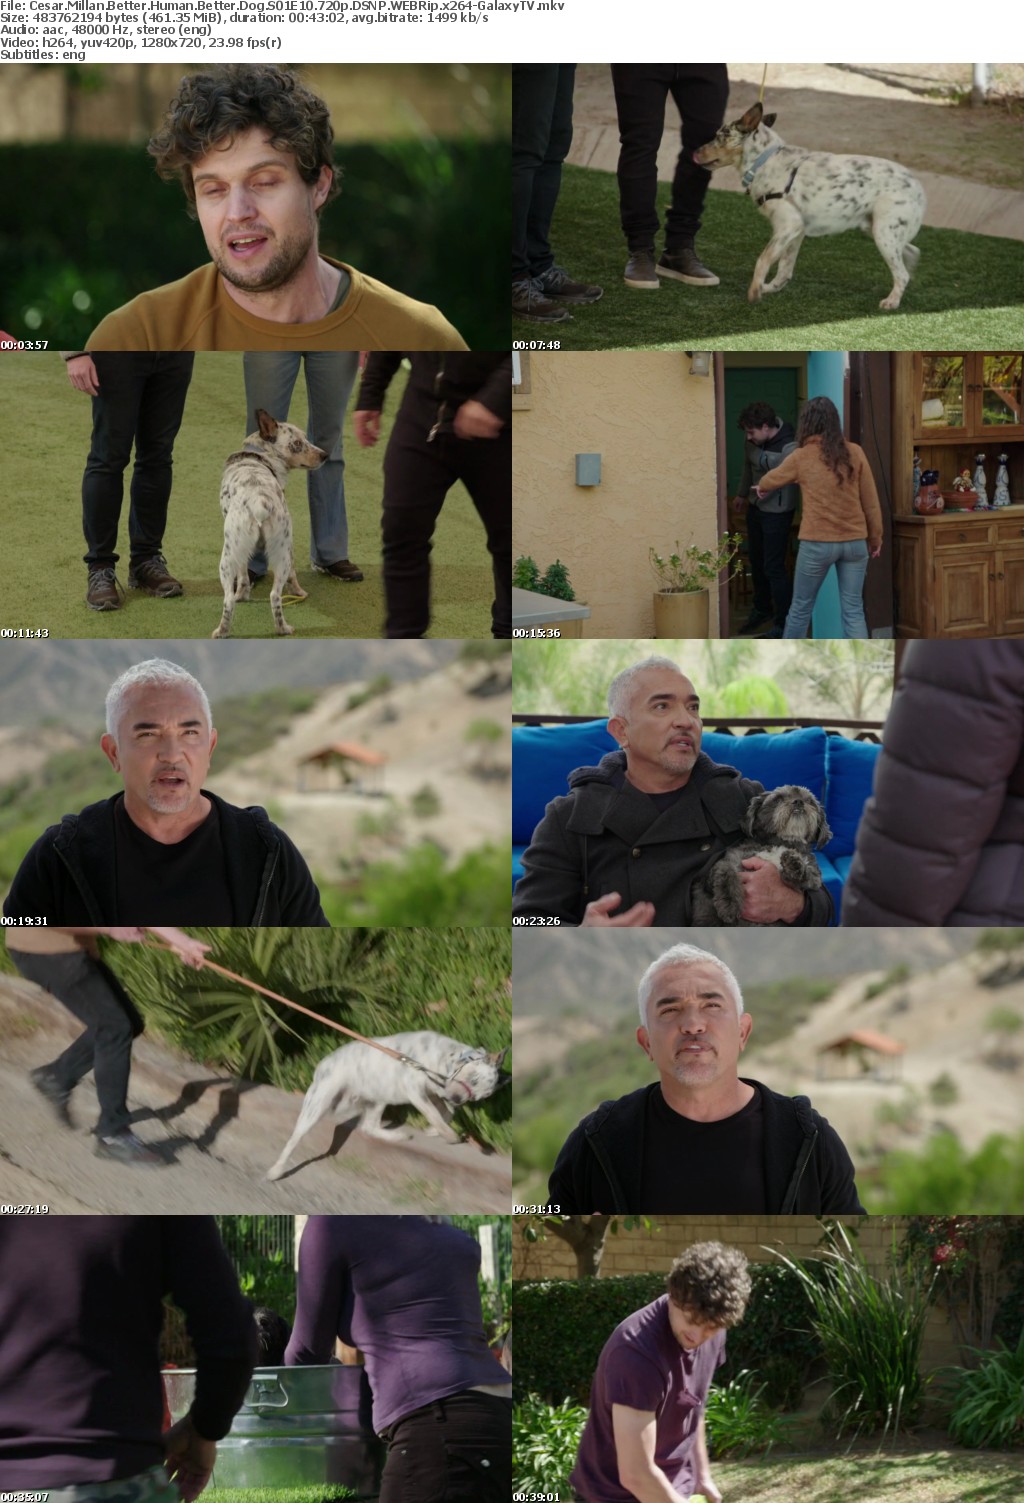 Cesar Millan Better Human Better Dog S01 COMPLETE 720p DSNP WEBRip x264-GalaxyTV